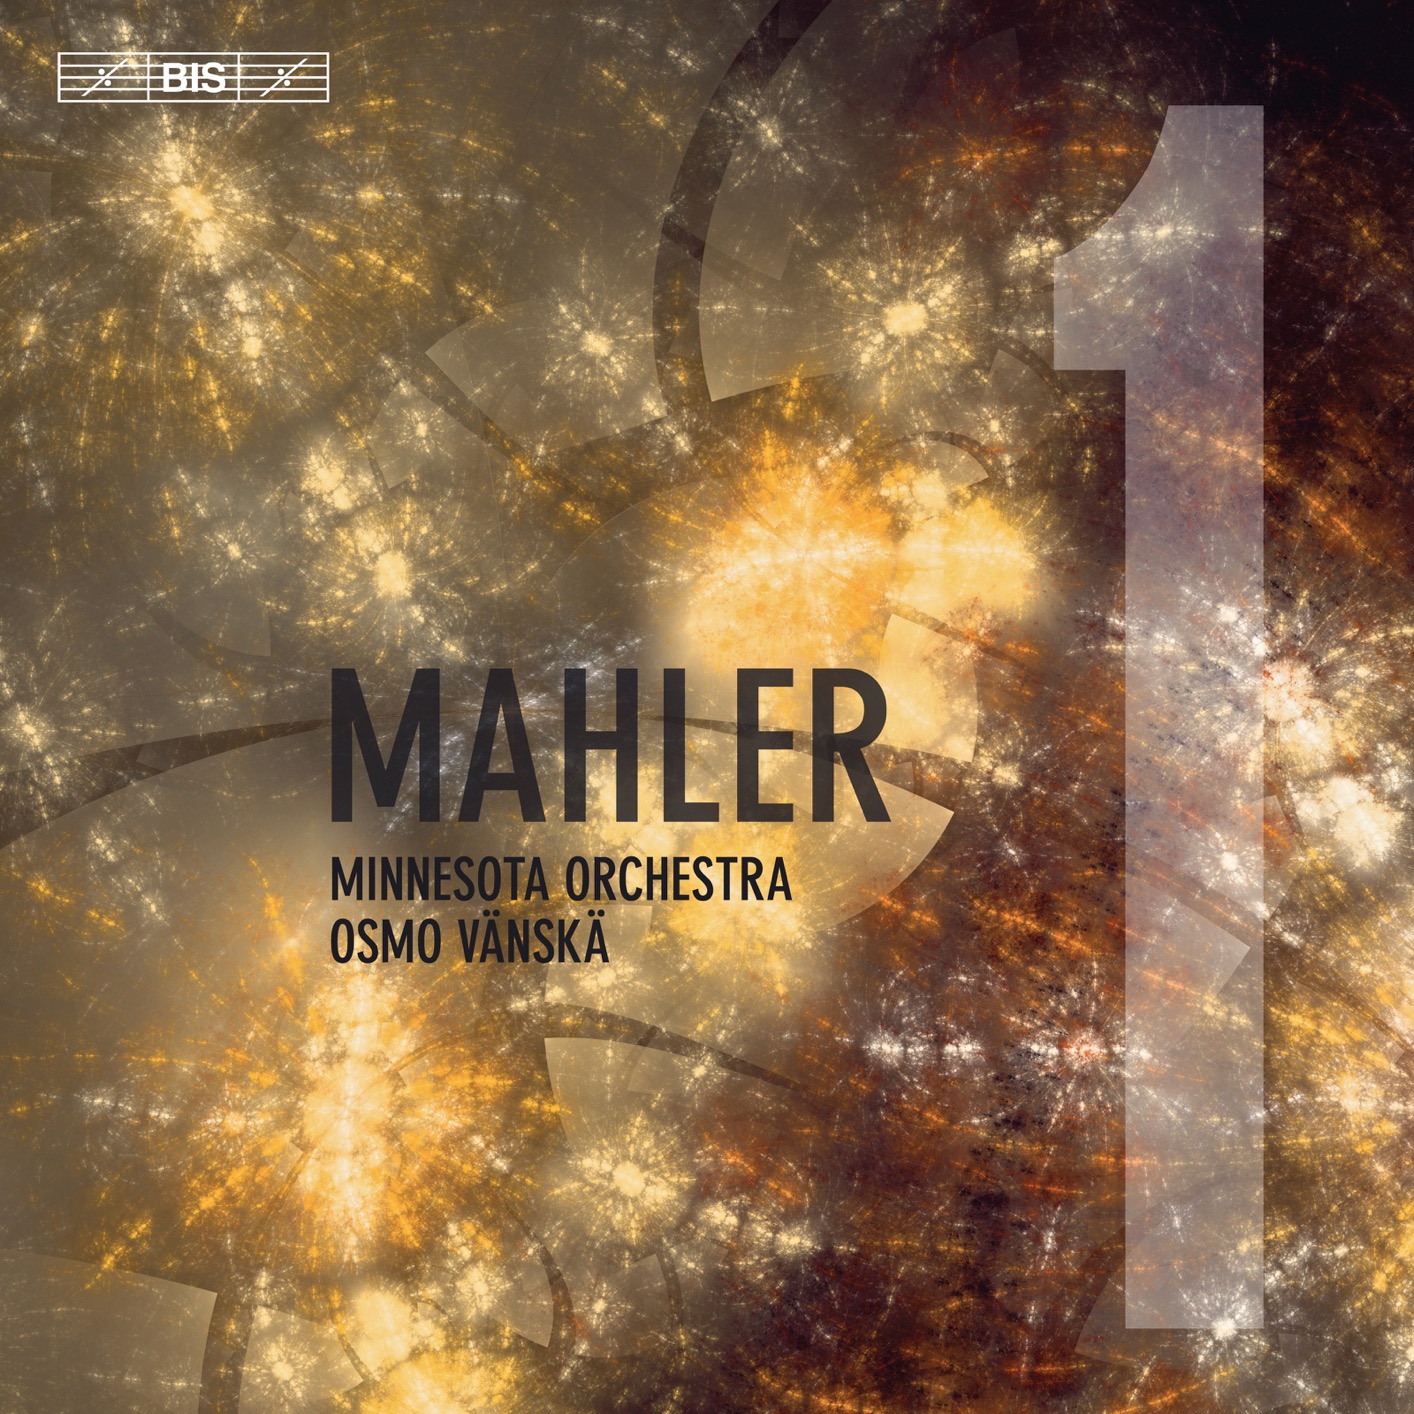 Minnesota Orchestra & Osmo Vanska - Mahler: Symphony No. 1 in D Major "Titan" (2019) [FLAC 24bit/96kHz]